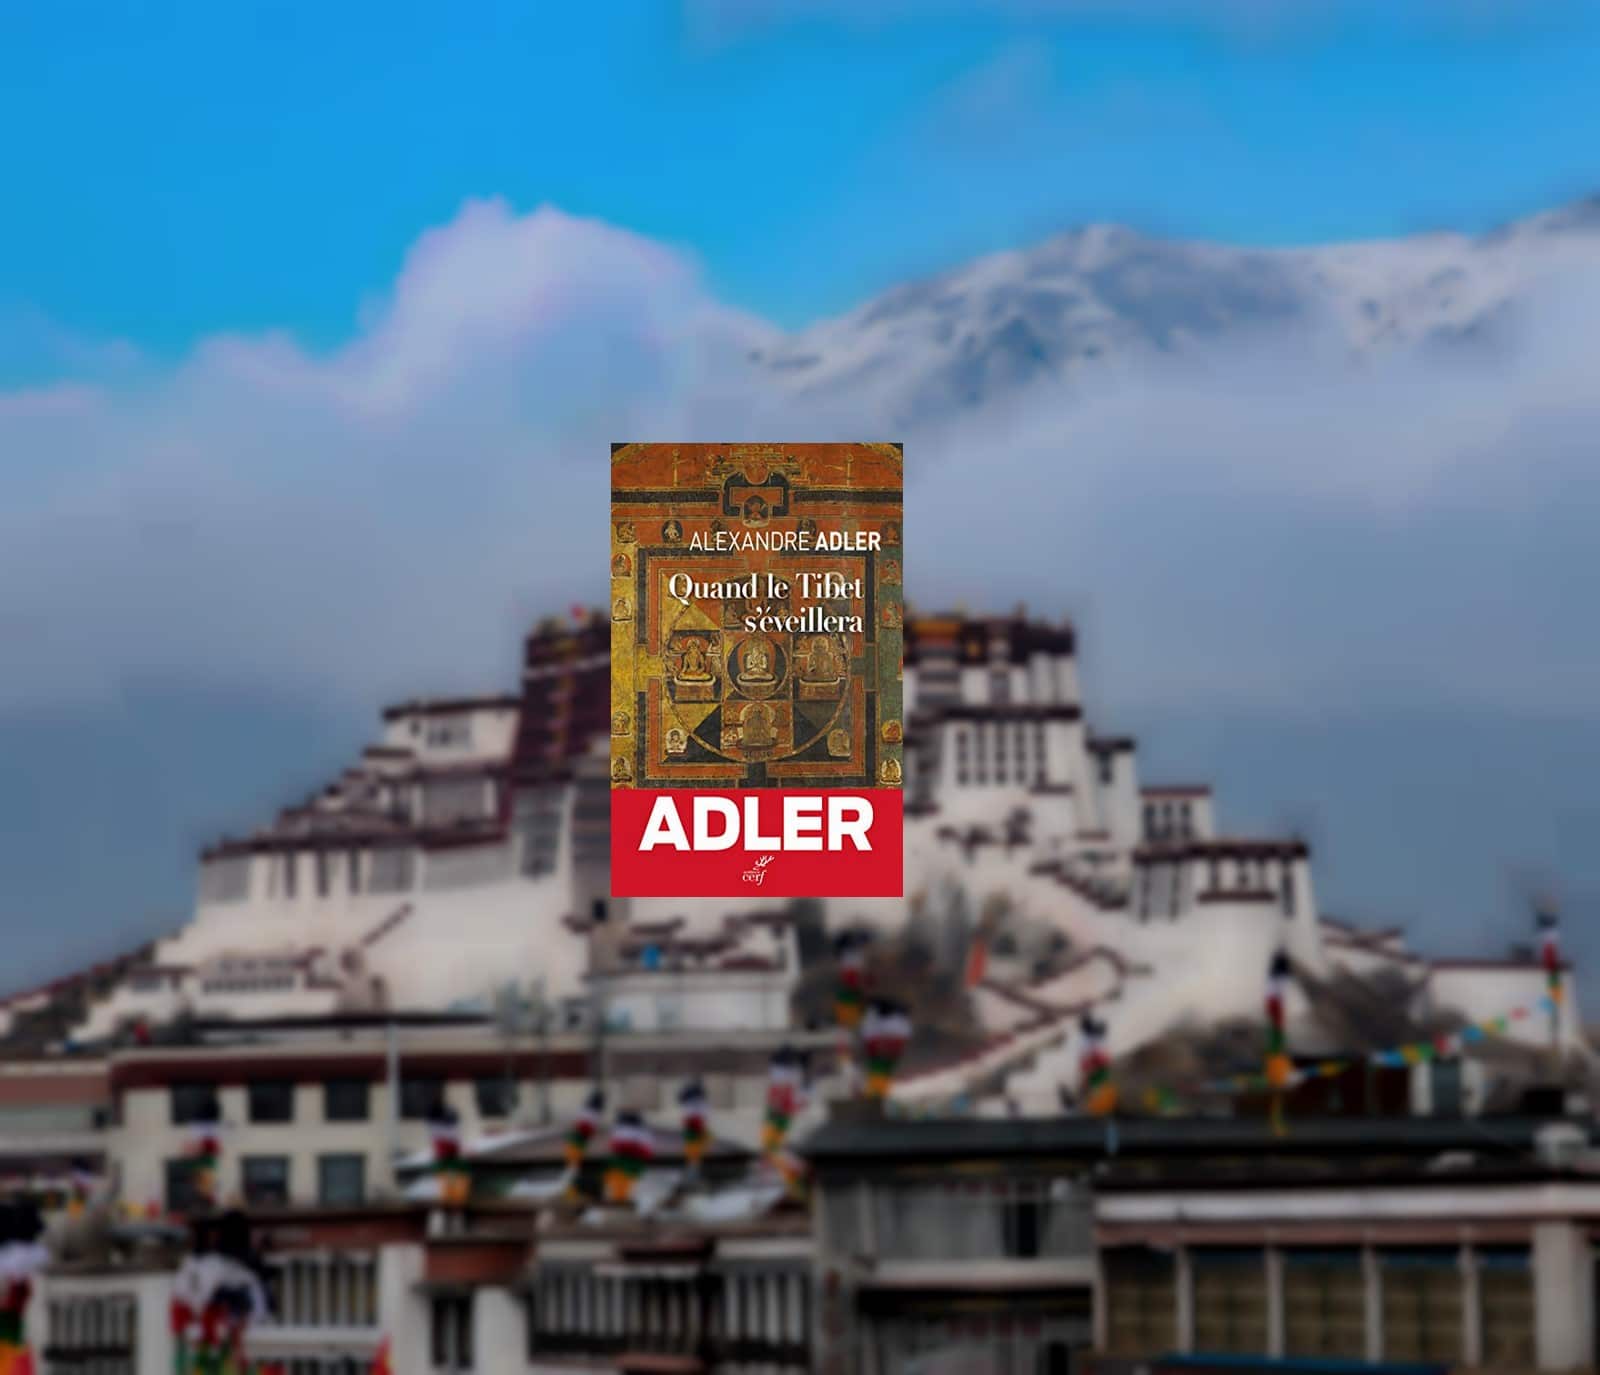 Lhassa au Tibet,
Auteurs  : CHINE NOUVELLE/SIPA,
Numéro de reportage  : 00950716_000001.